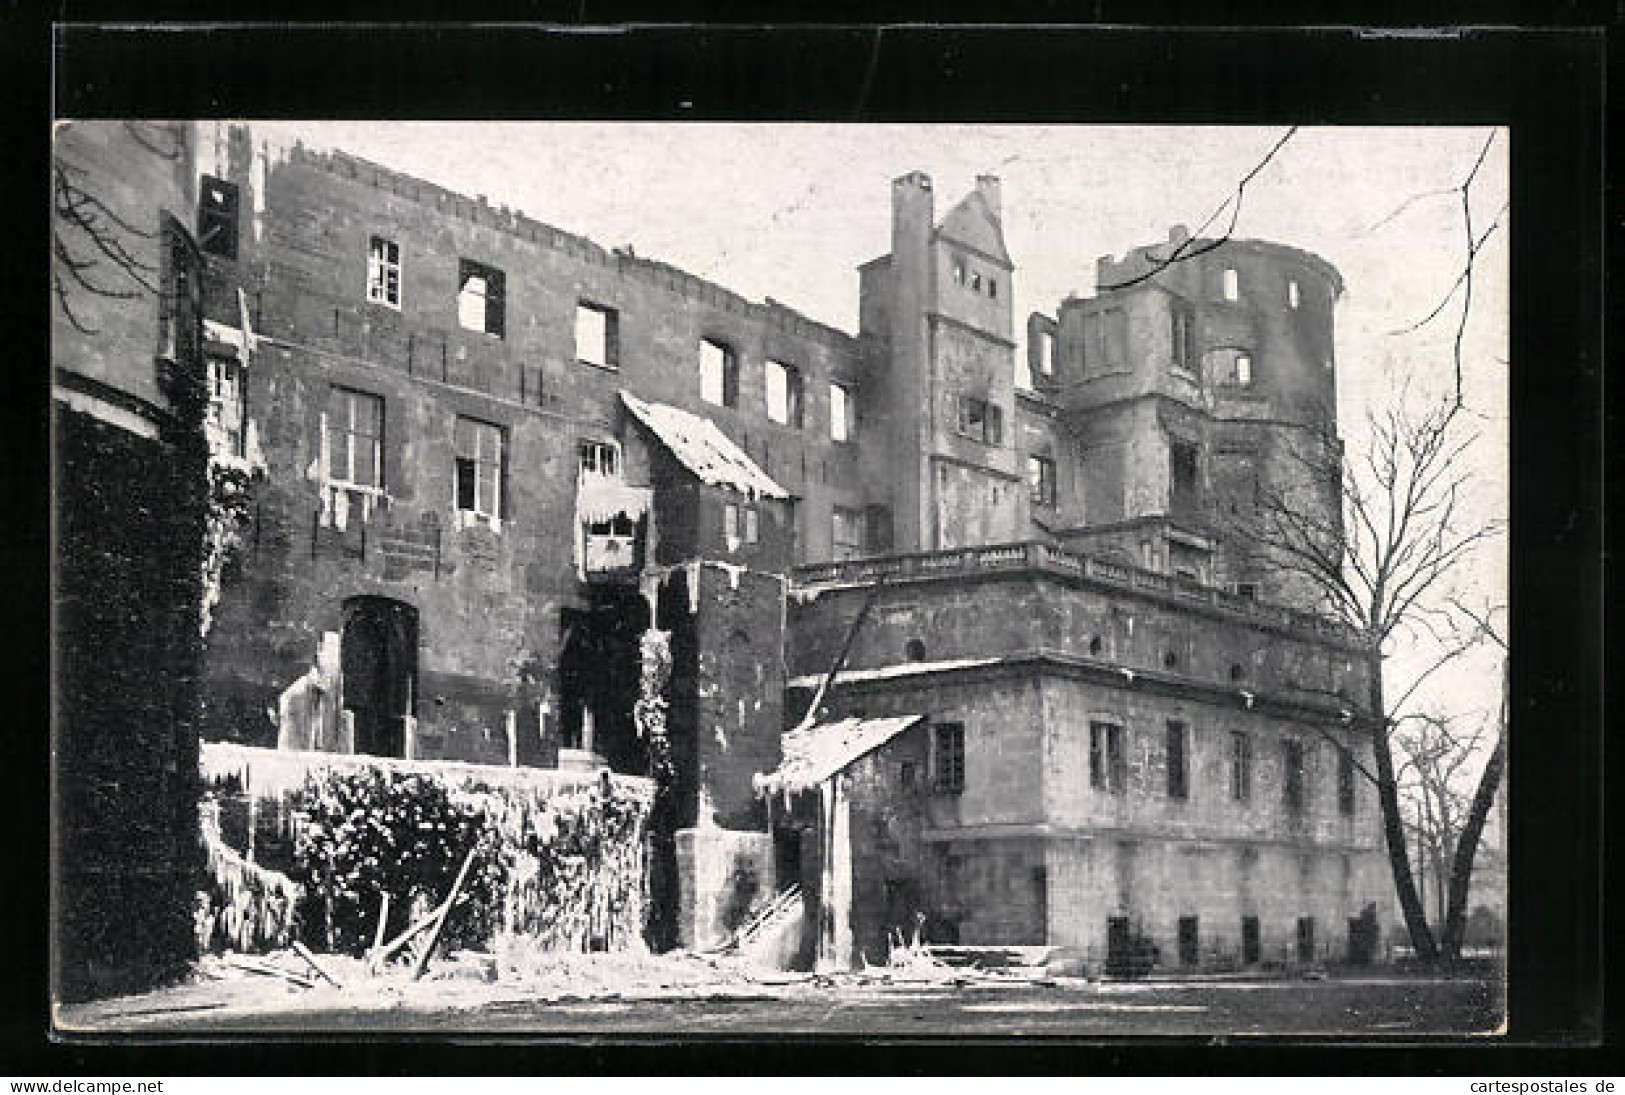 AK Stuttgart, Brand Des Alten Schlosses 1931, Ausgebrannte Schlossfront  - Katastrophen